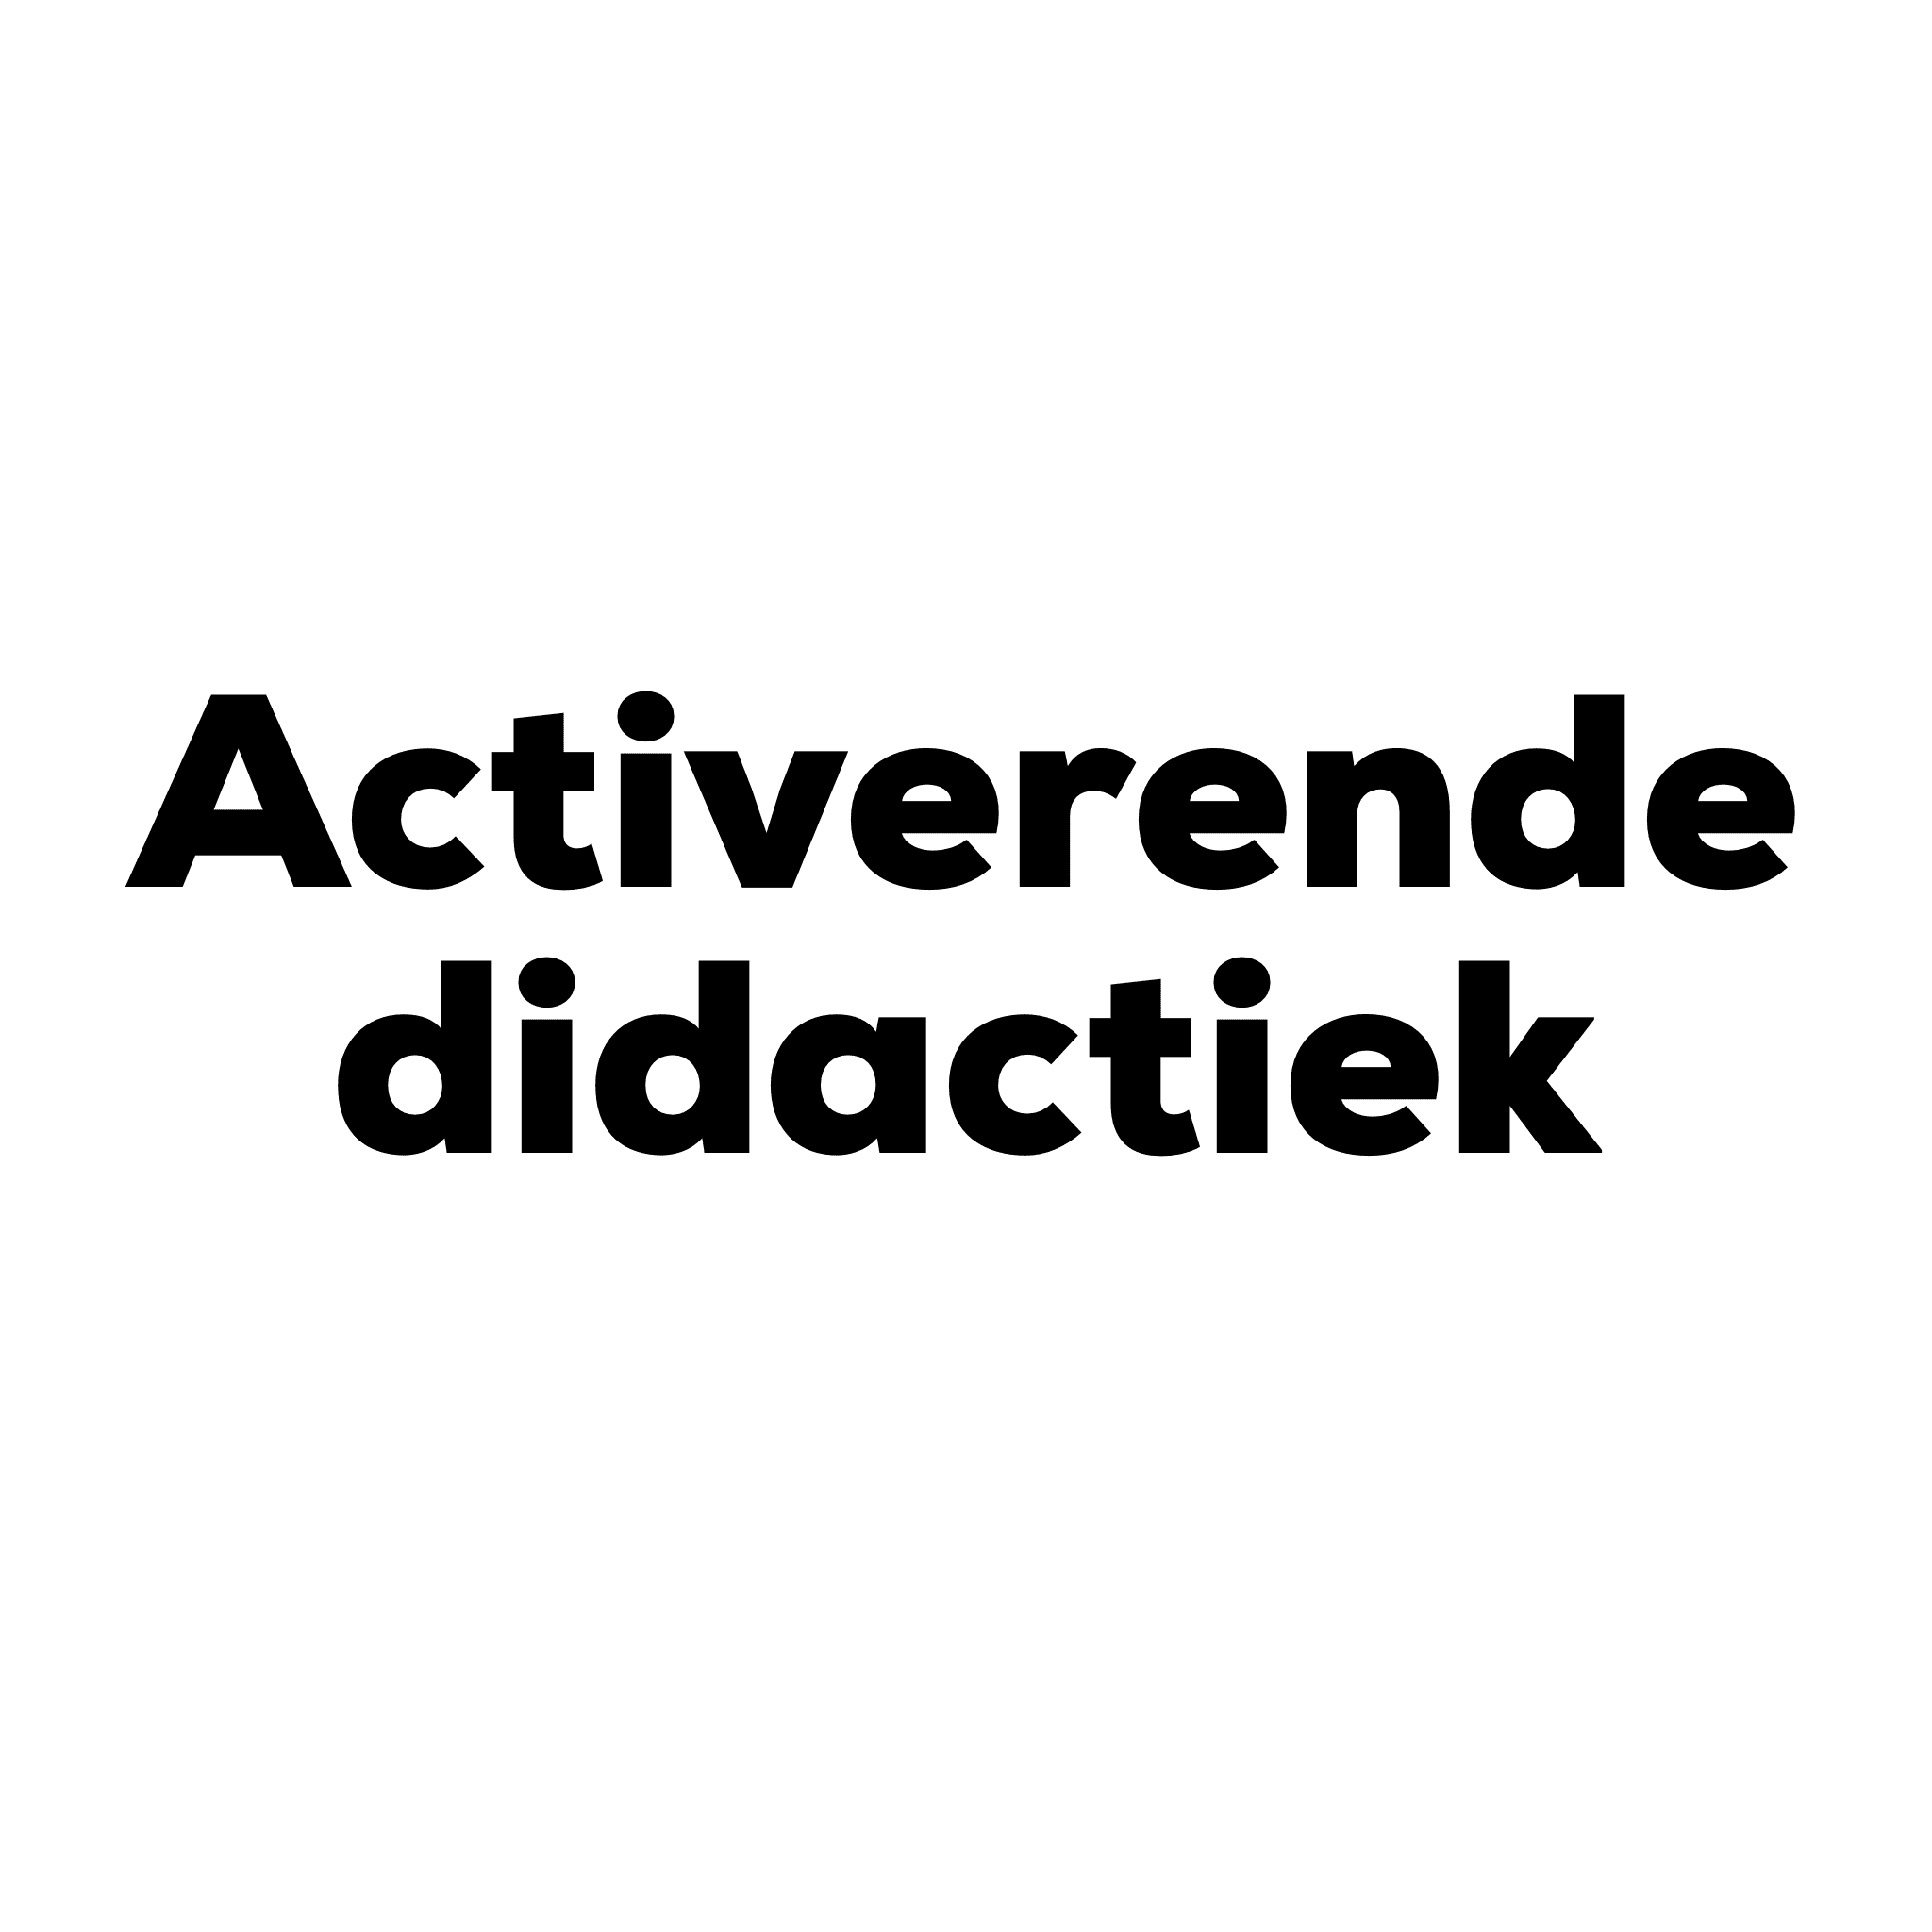 Workshop Activerende didactiek